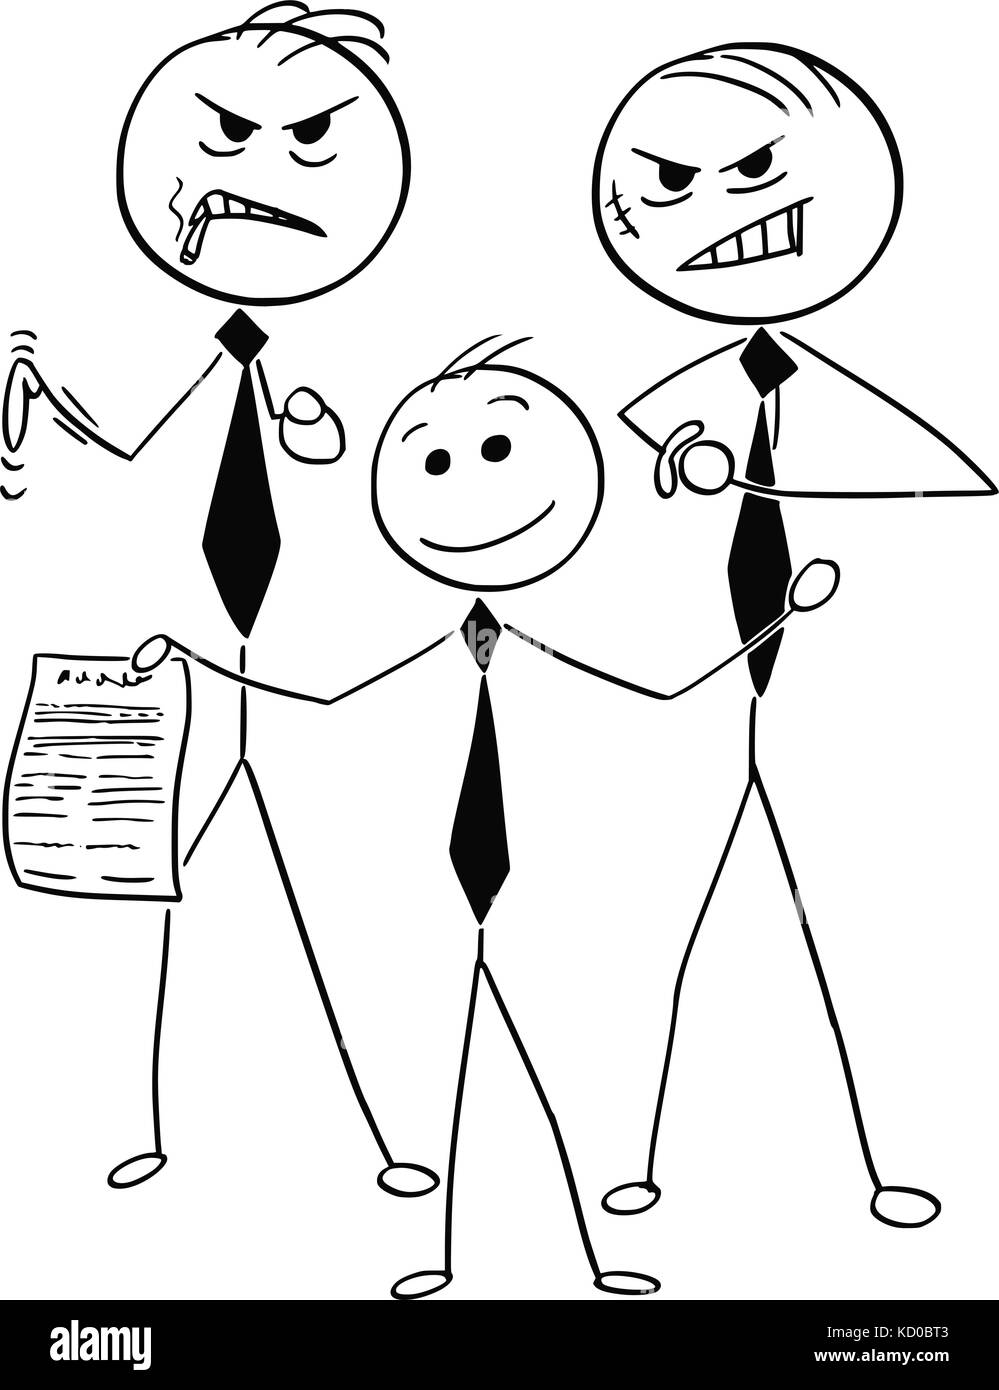 Cartoon stick Mann Abbildung des warmen Lächeln, Geschäftsmann mit zwei gefährlichen Assistenten mit verdächtigen Unfair Contract Agreement. Stock Vektor